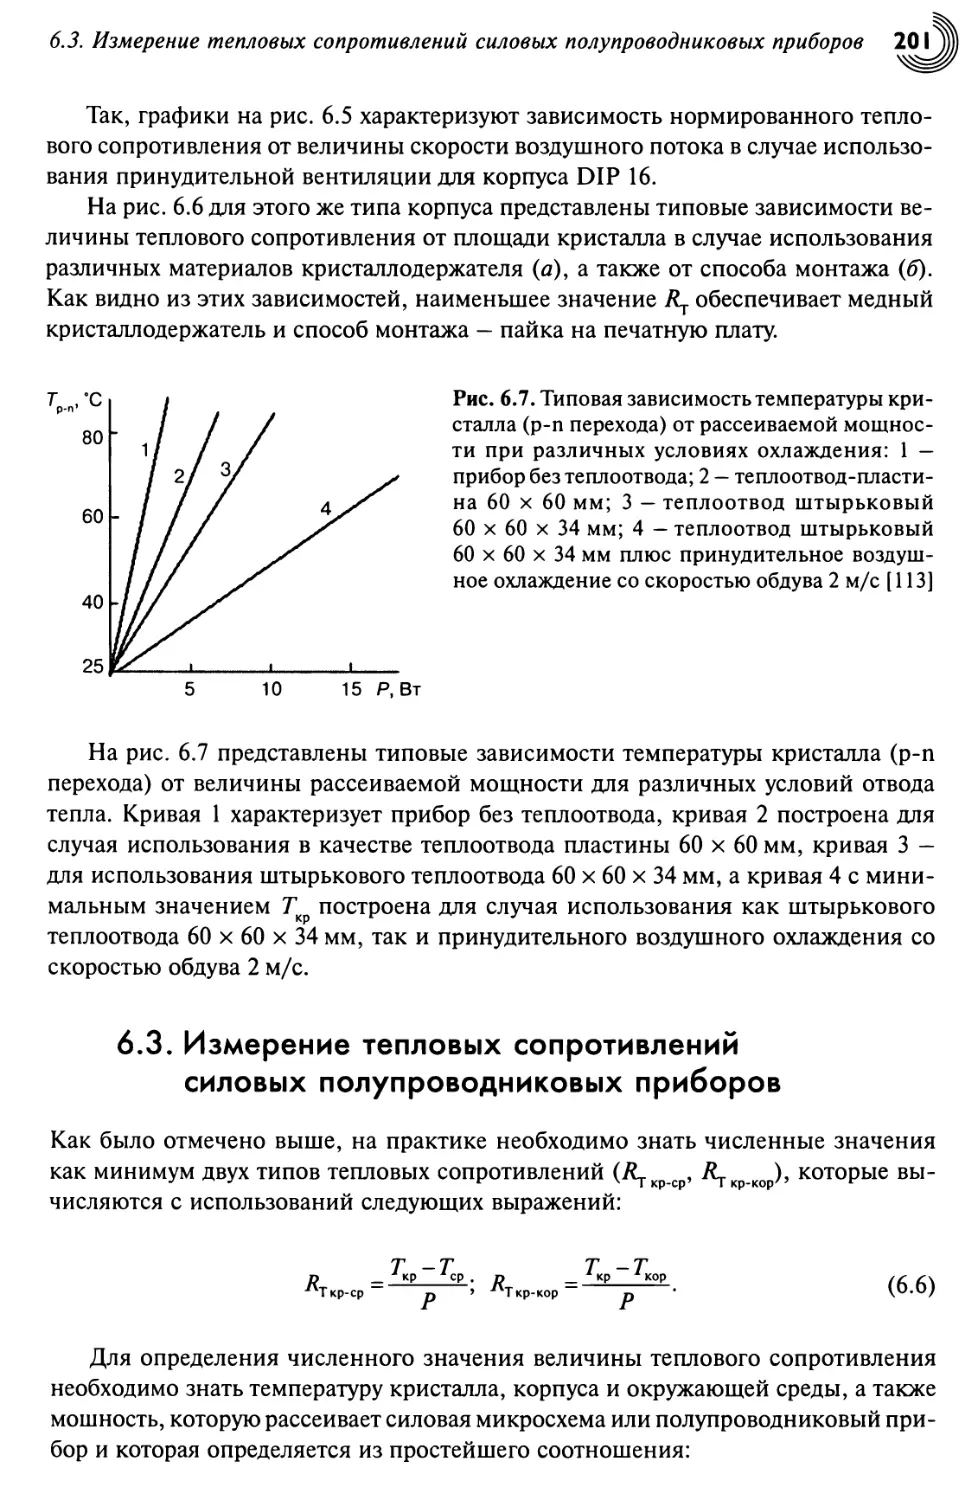 6.3. Измерение тепловых сопротивлений силовых полупроводниковых приборов